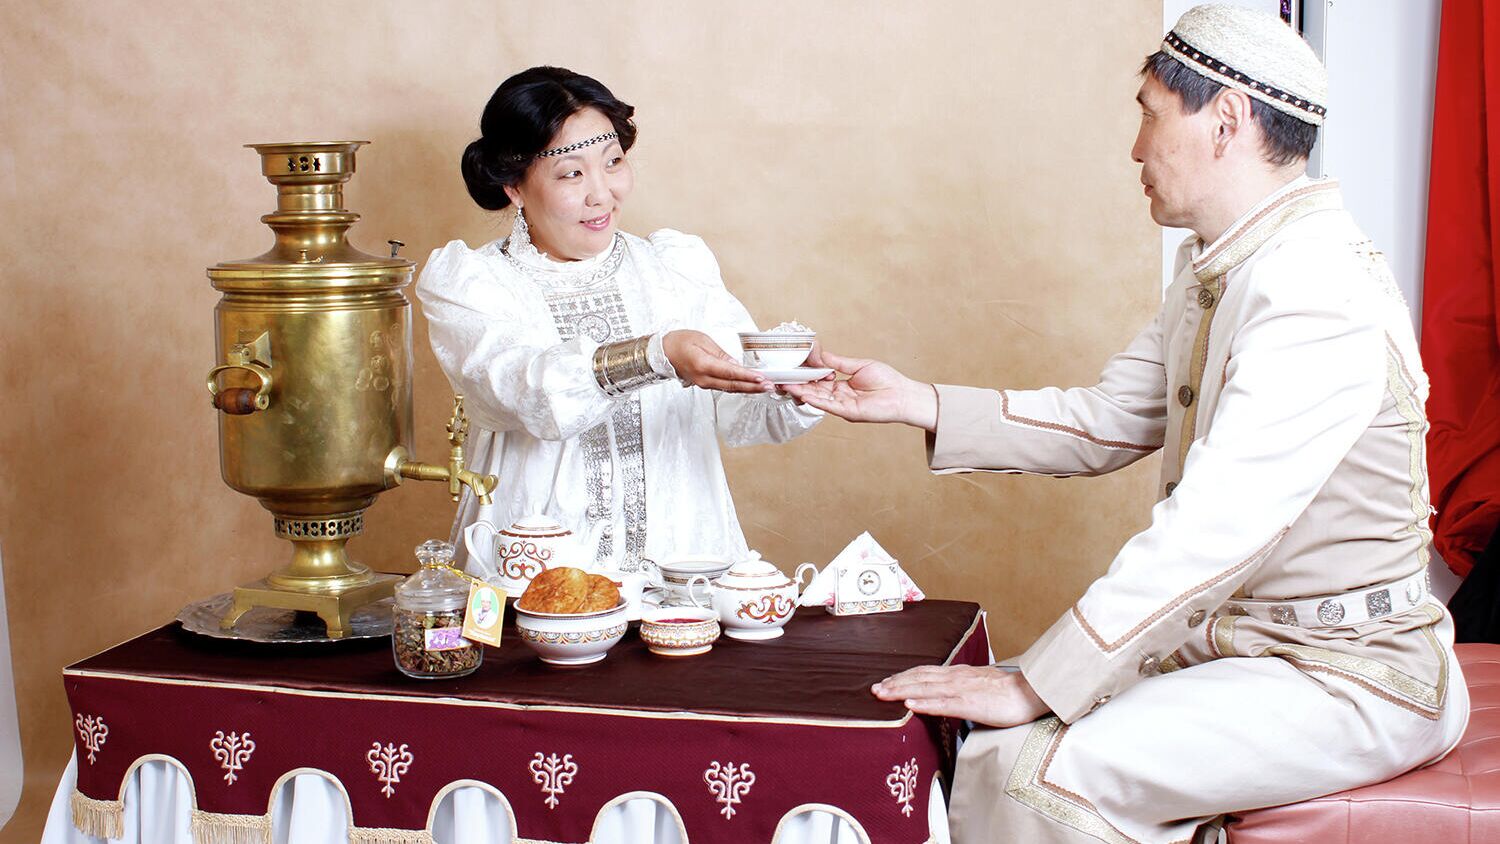 Для продвижения культуры чаепития Ассоциация гостеприимства РС (Я) воспроизвела чайную церемонию на основе якутских традиций в виде мастер-классов - РИА Новости, 1920, 20.05.2020